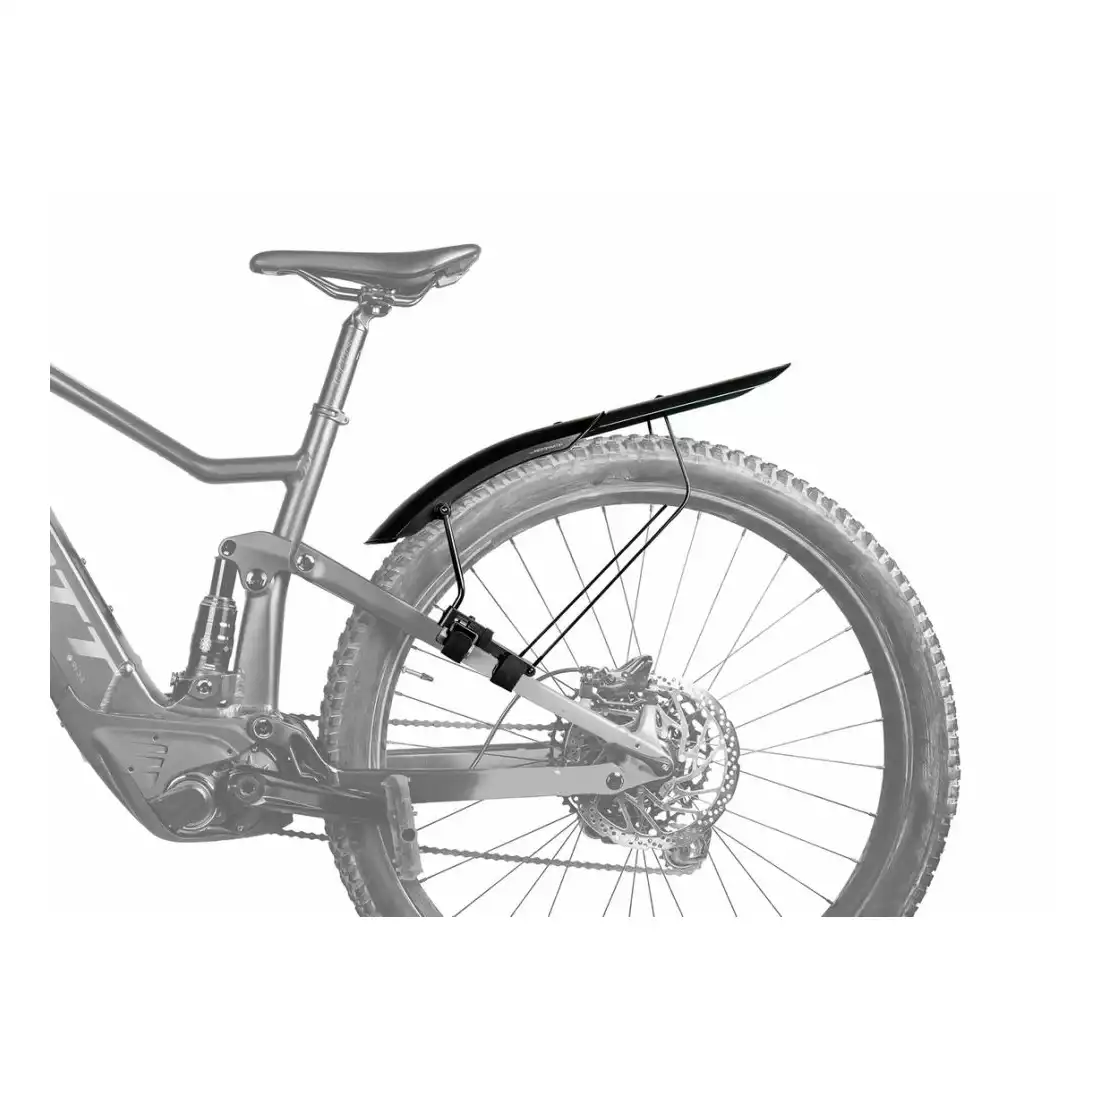 TOPEAK TETRAFENDER M2 hátsó kerékpár sárvédő (26-tól 29-ig terjedő kerékhez), fekete